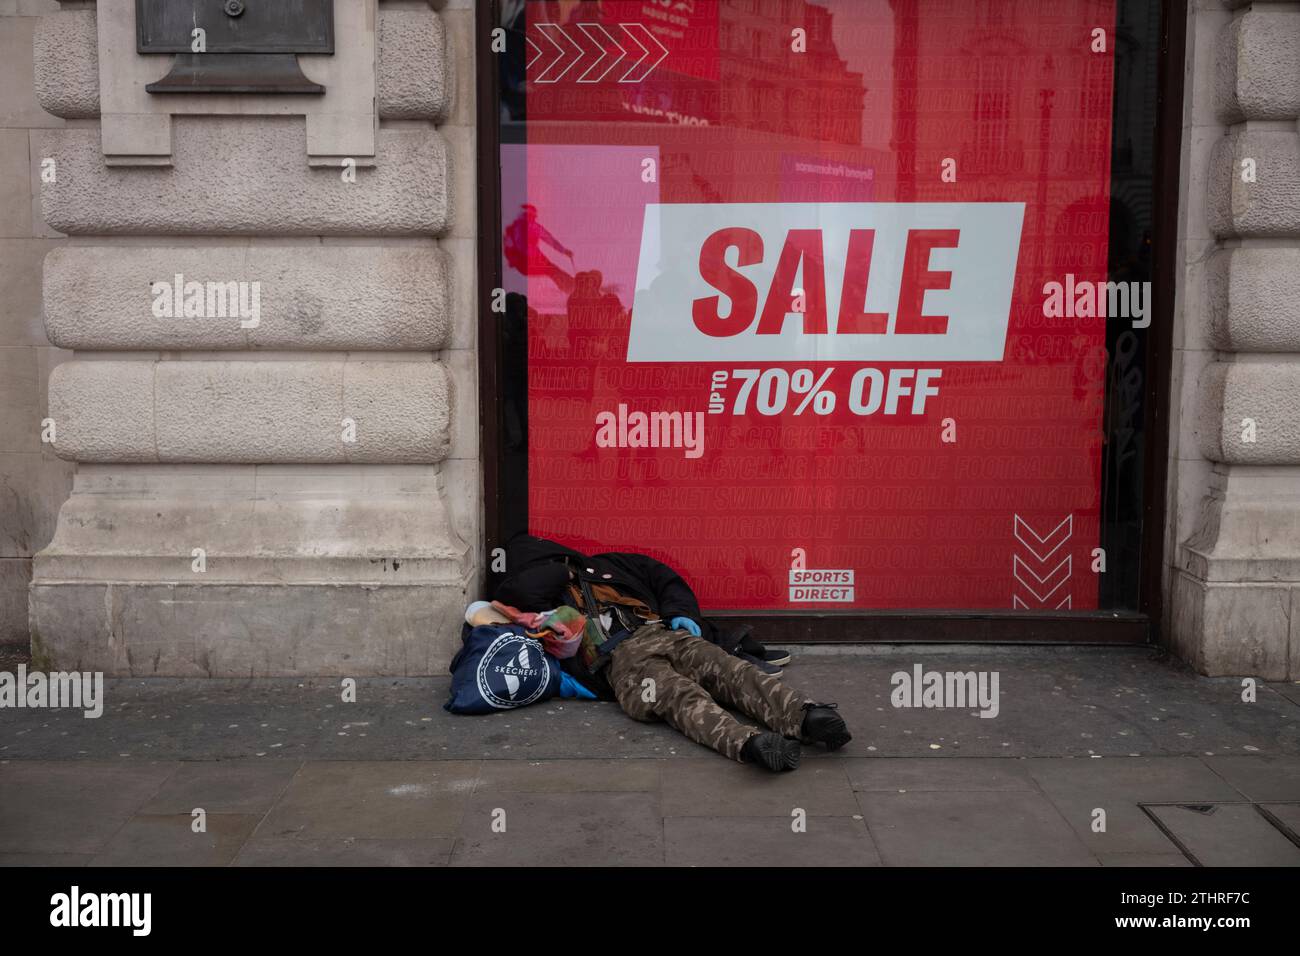 Un homme sans abri se trouve dans la rue devant un panneau DE VENTE 70% de réduction sur Piccadilly Circus de Londres, pendant la période de Noël, Angleterre, Royaume-Uni Banque D'Images